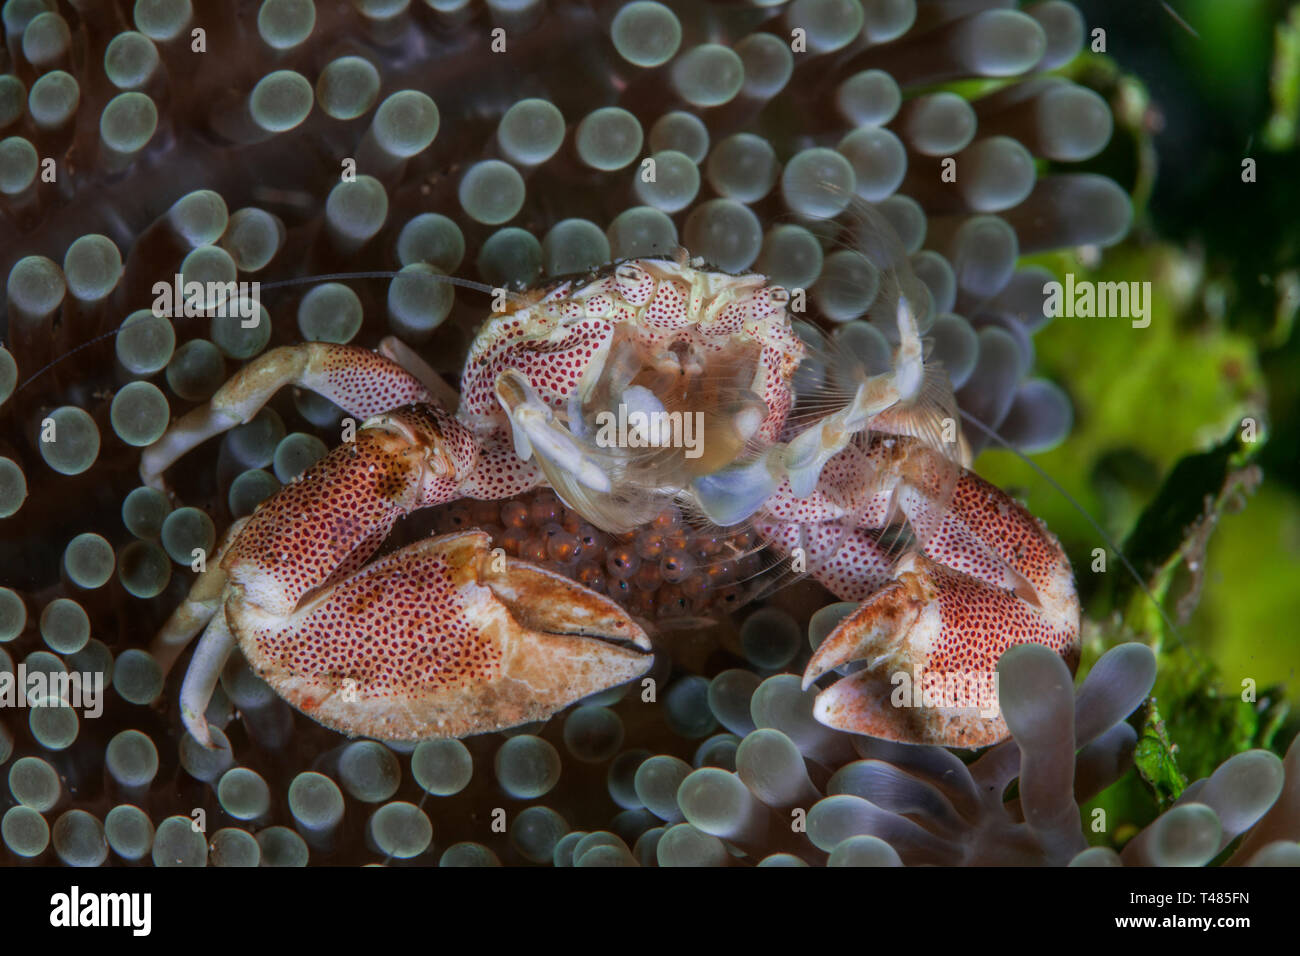 Macchiato il granchio di porcellana con uova rifugiandosi nella moquette anemone. Stretto di Lembeh, Indonesia. Foto Stock